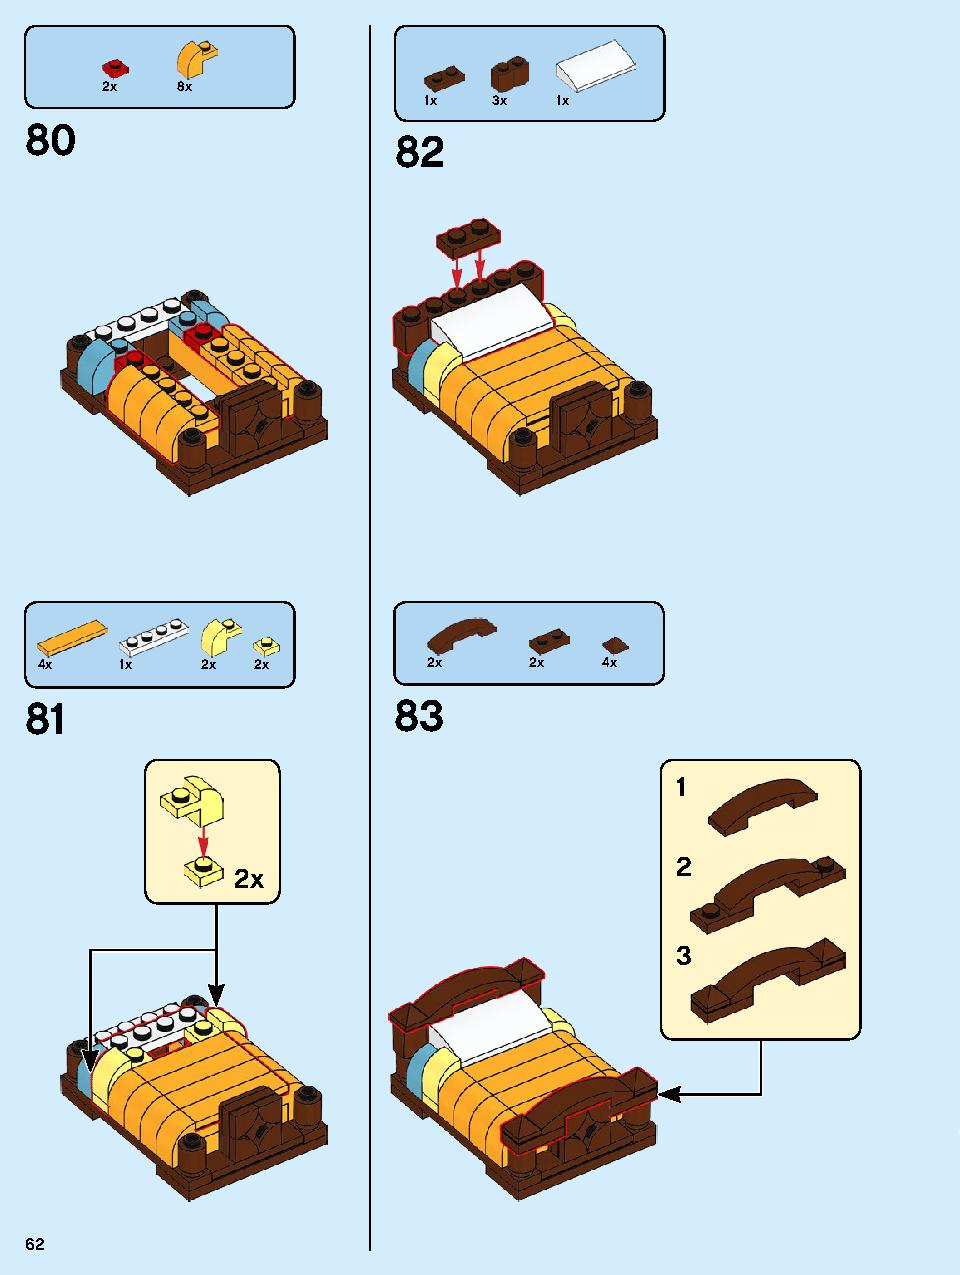 本屋さん 10270 レゴの商品情報 レゴの説明書・組立方法 62 page